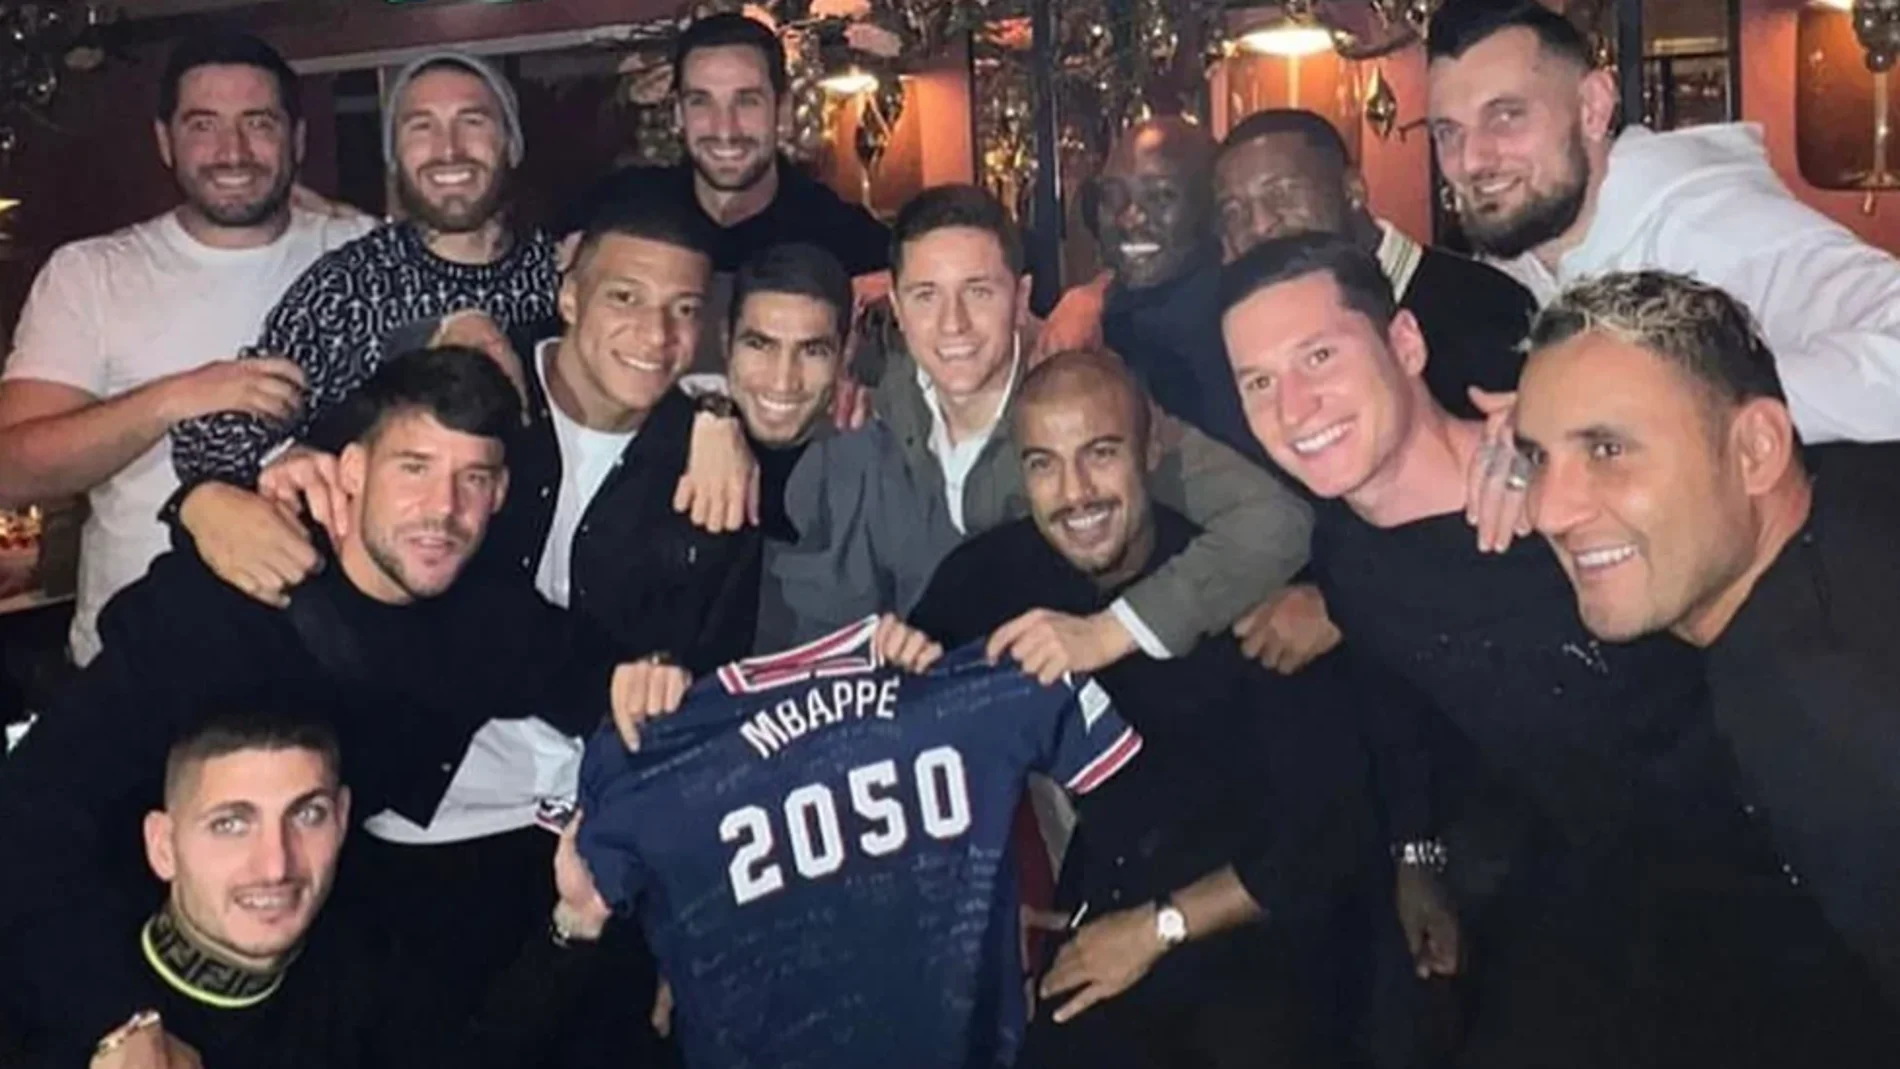 Mbappé celebra su cumpleaños sin Messi ni Neymar y recibe un regalo inesperado de sus compañeros del PSG